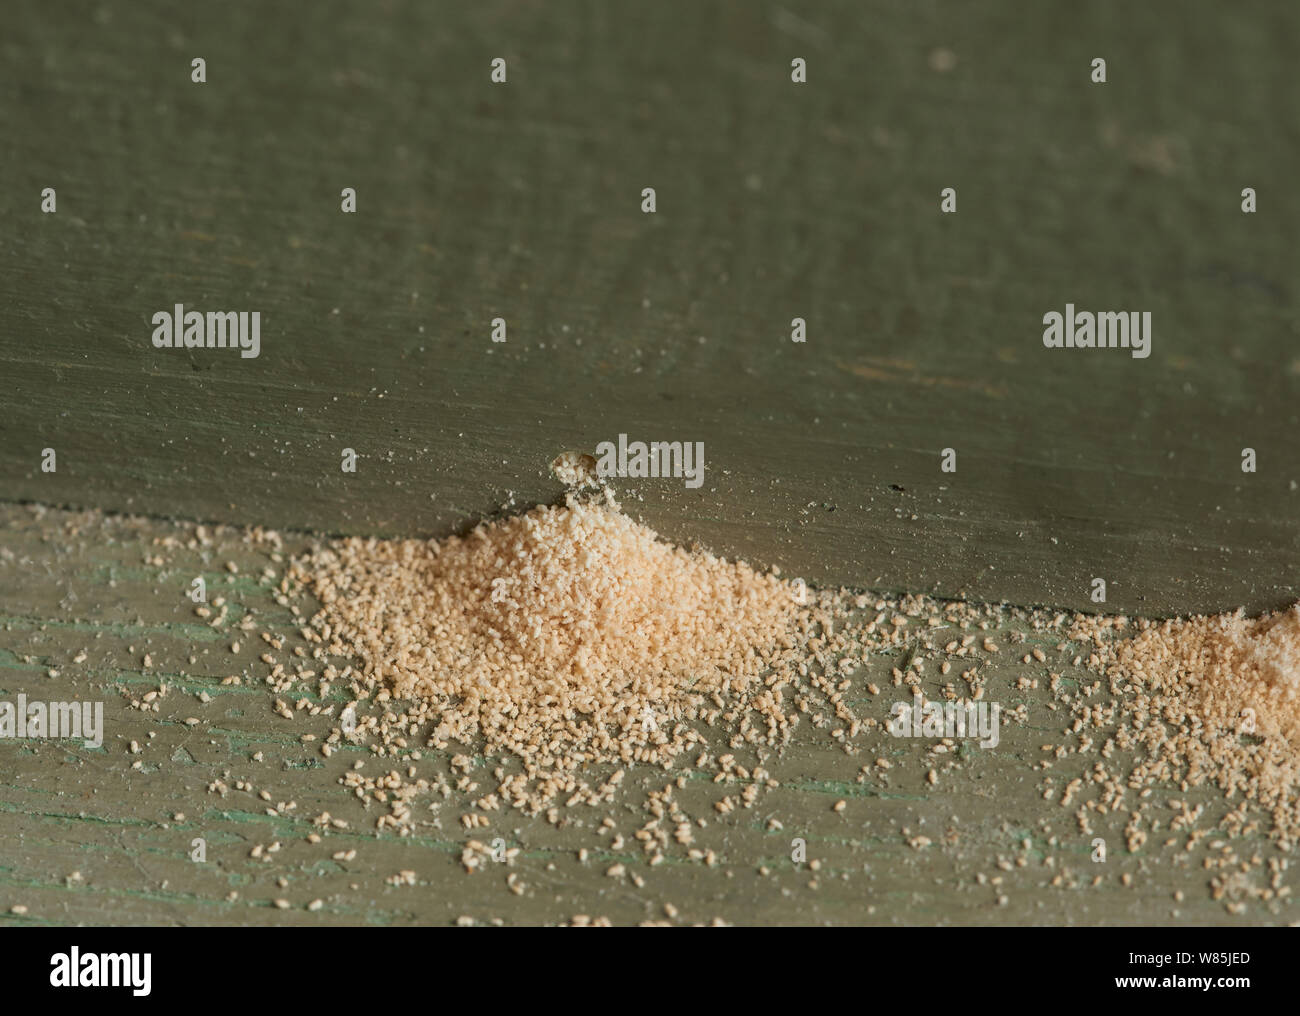 Woodworm Golf Polo ou le mobilier asiatique (Anobium punctatum) trous avec la poussière ou la poudre produite par la larve. Angleterre, Royaume-Uni. Banque D'Images